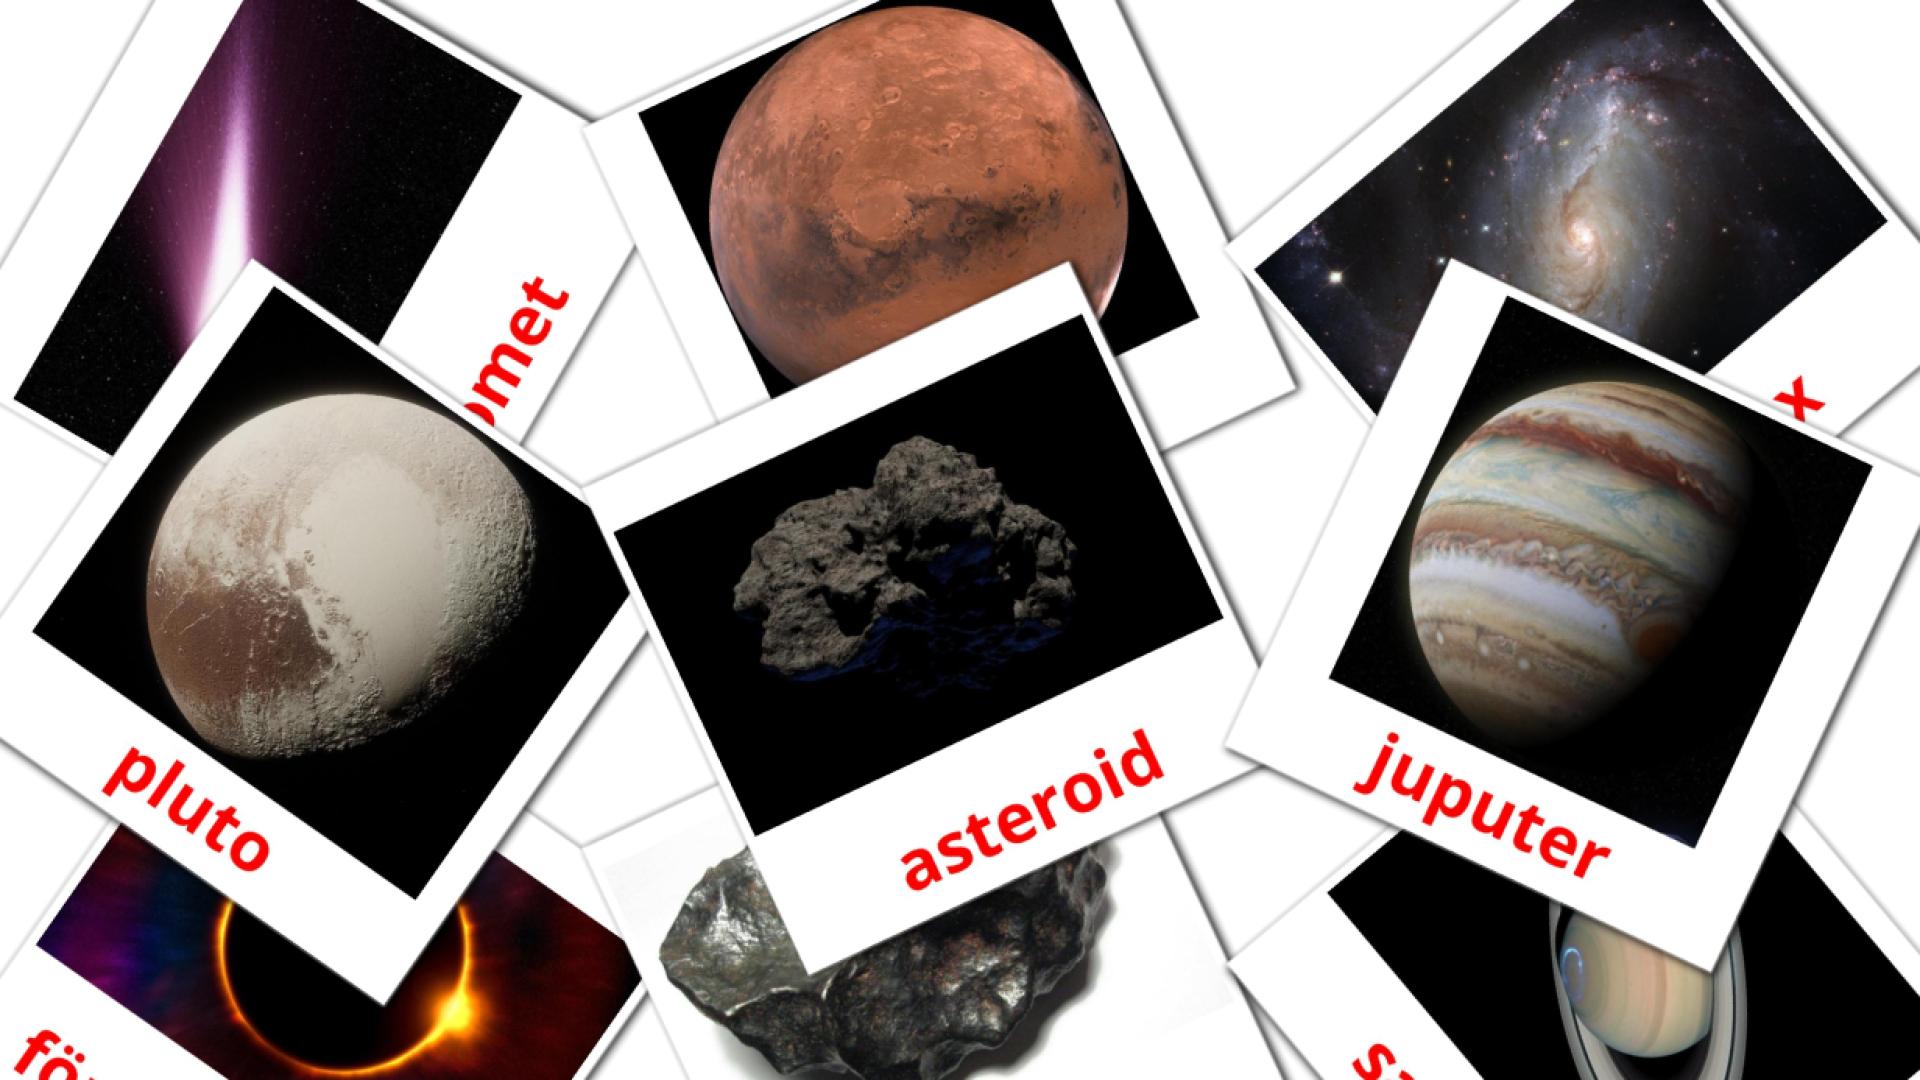 21 Bildkarten für Solsystem